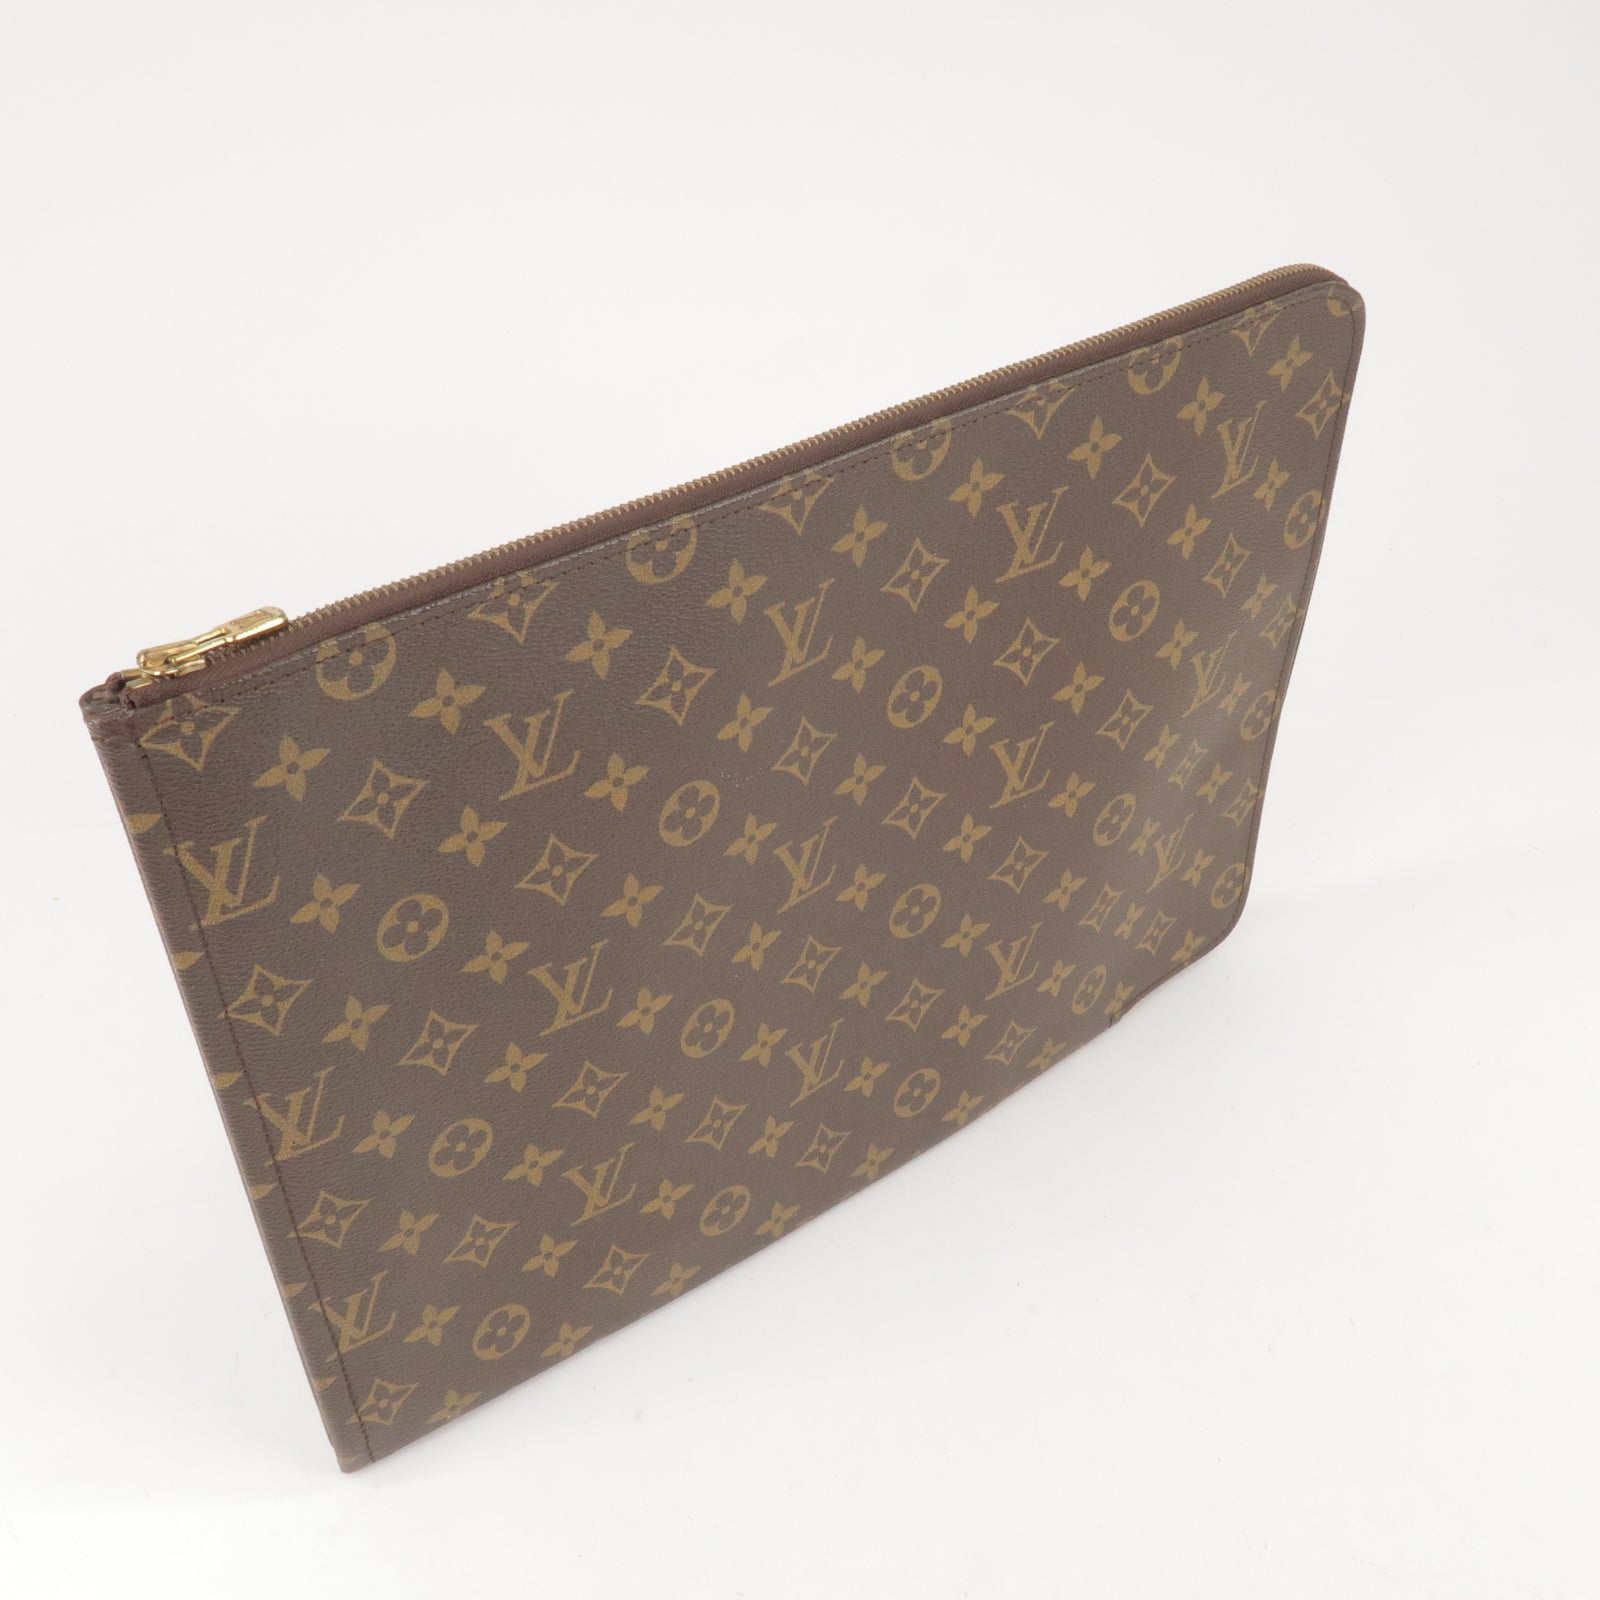 Louis Vuitton Porte Documents Envelope Clutch